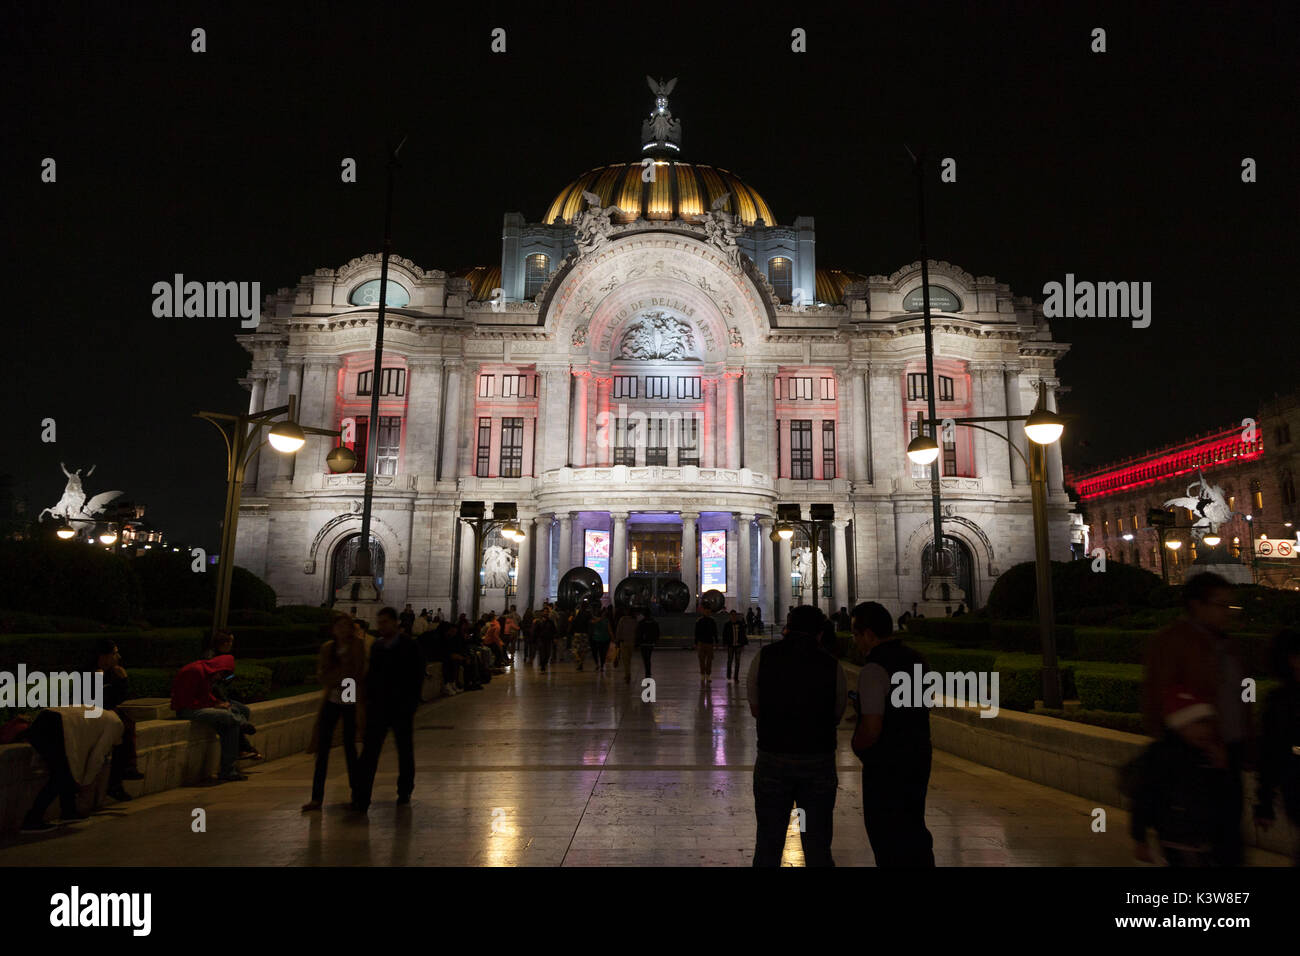 Palace of Fine Arts, Zocalo, Mexico City, Mexico. Stock Photo